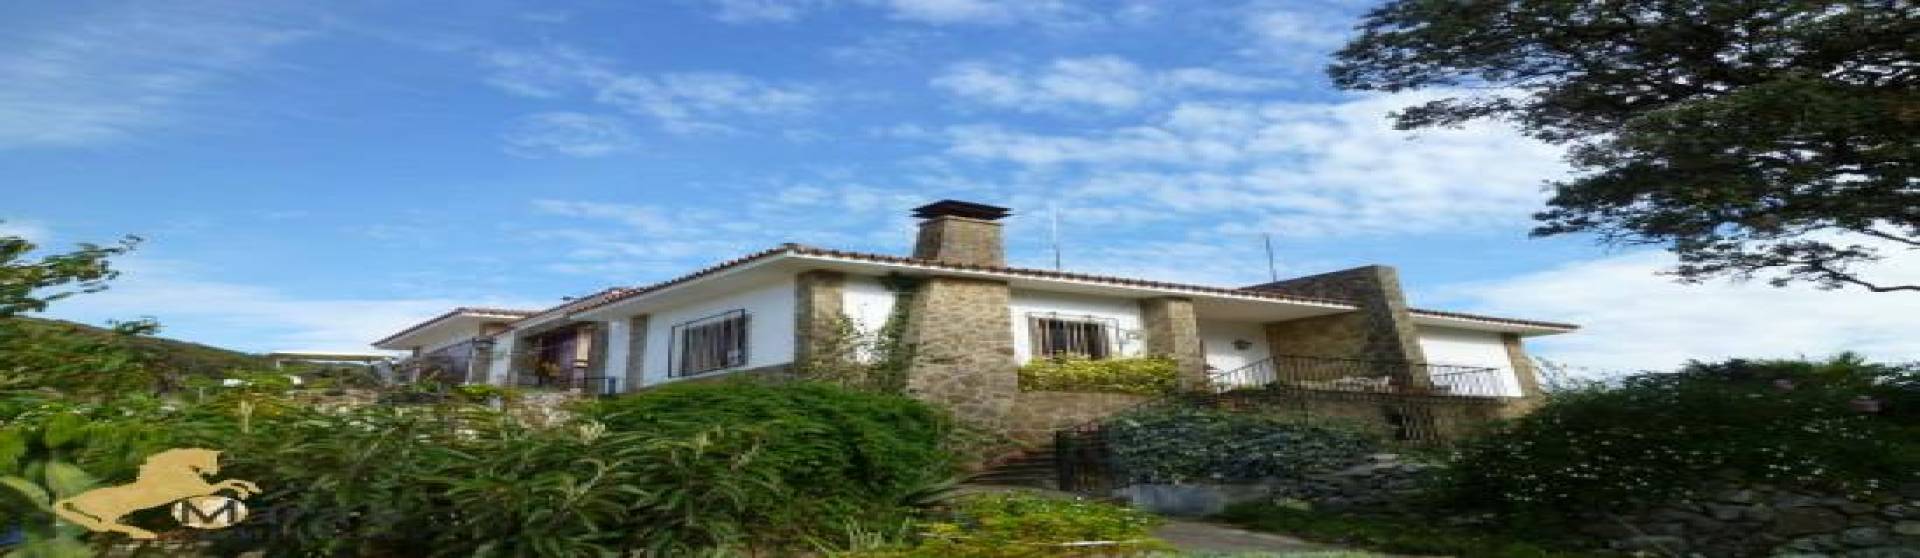 Villa, zu verkaufen, Listing ID 1114, San Jose del Valle , Andalusien, Spanien, 11580,